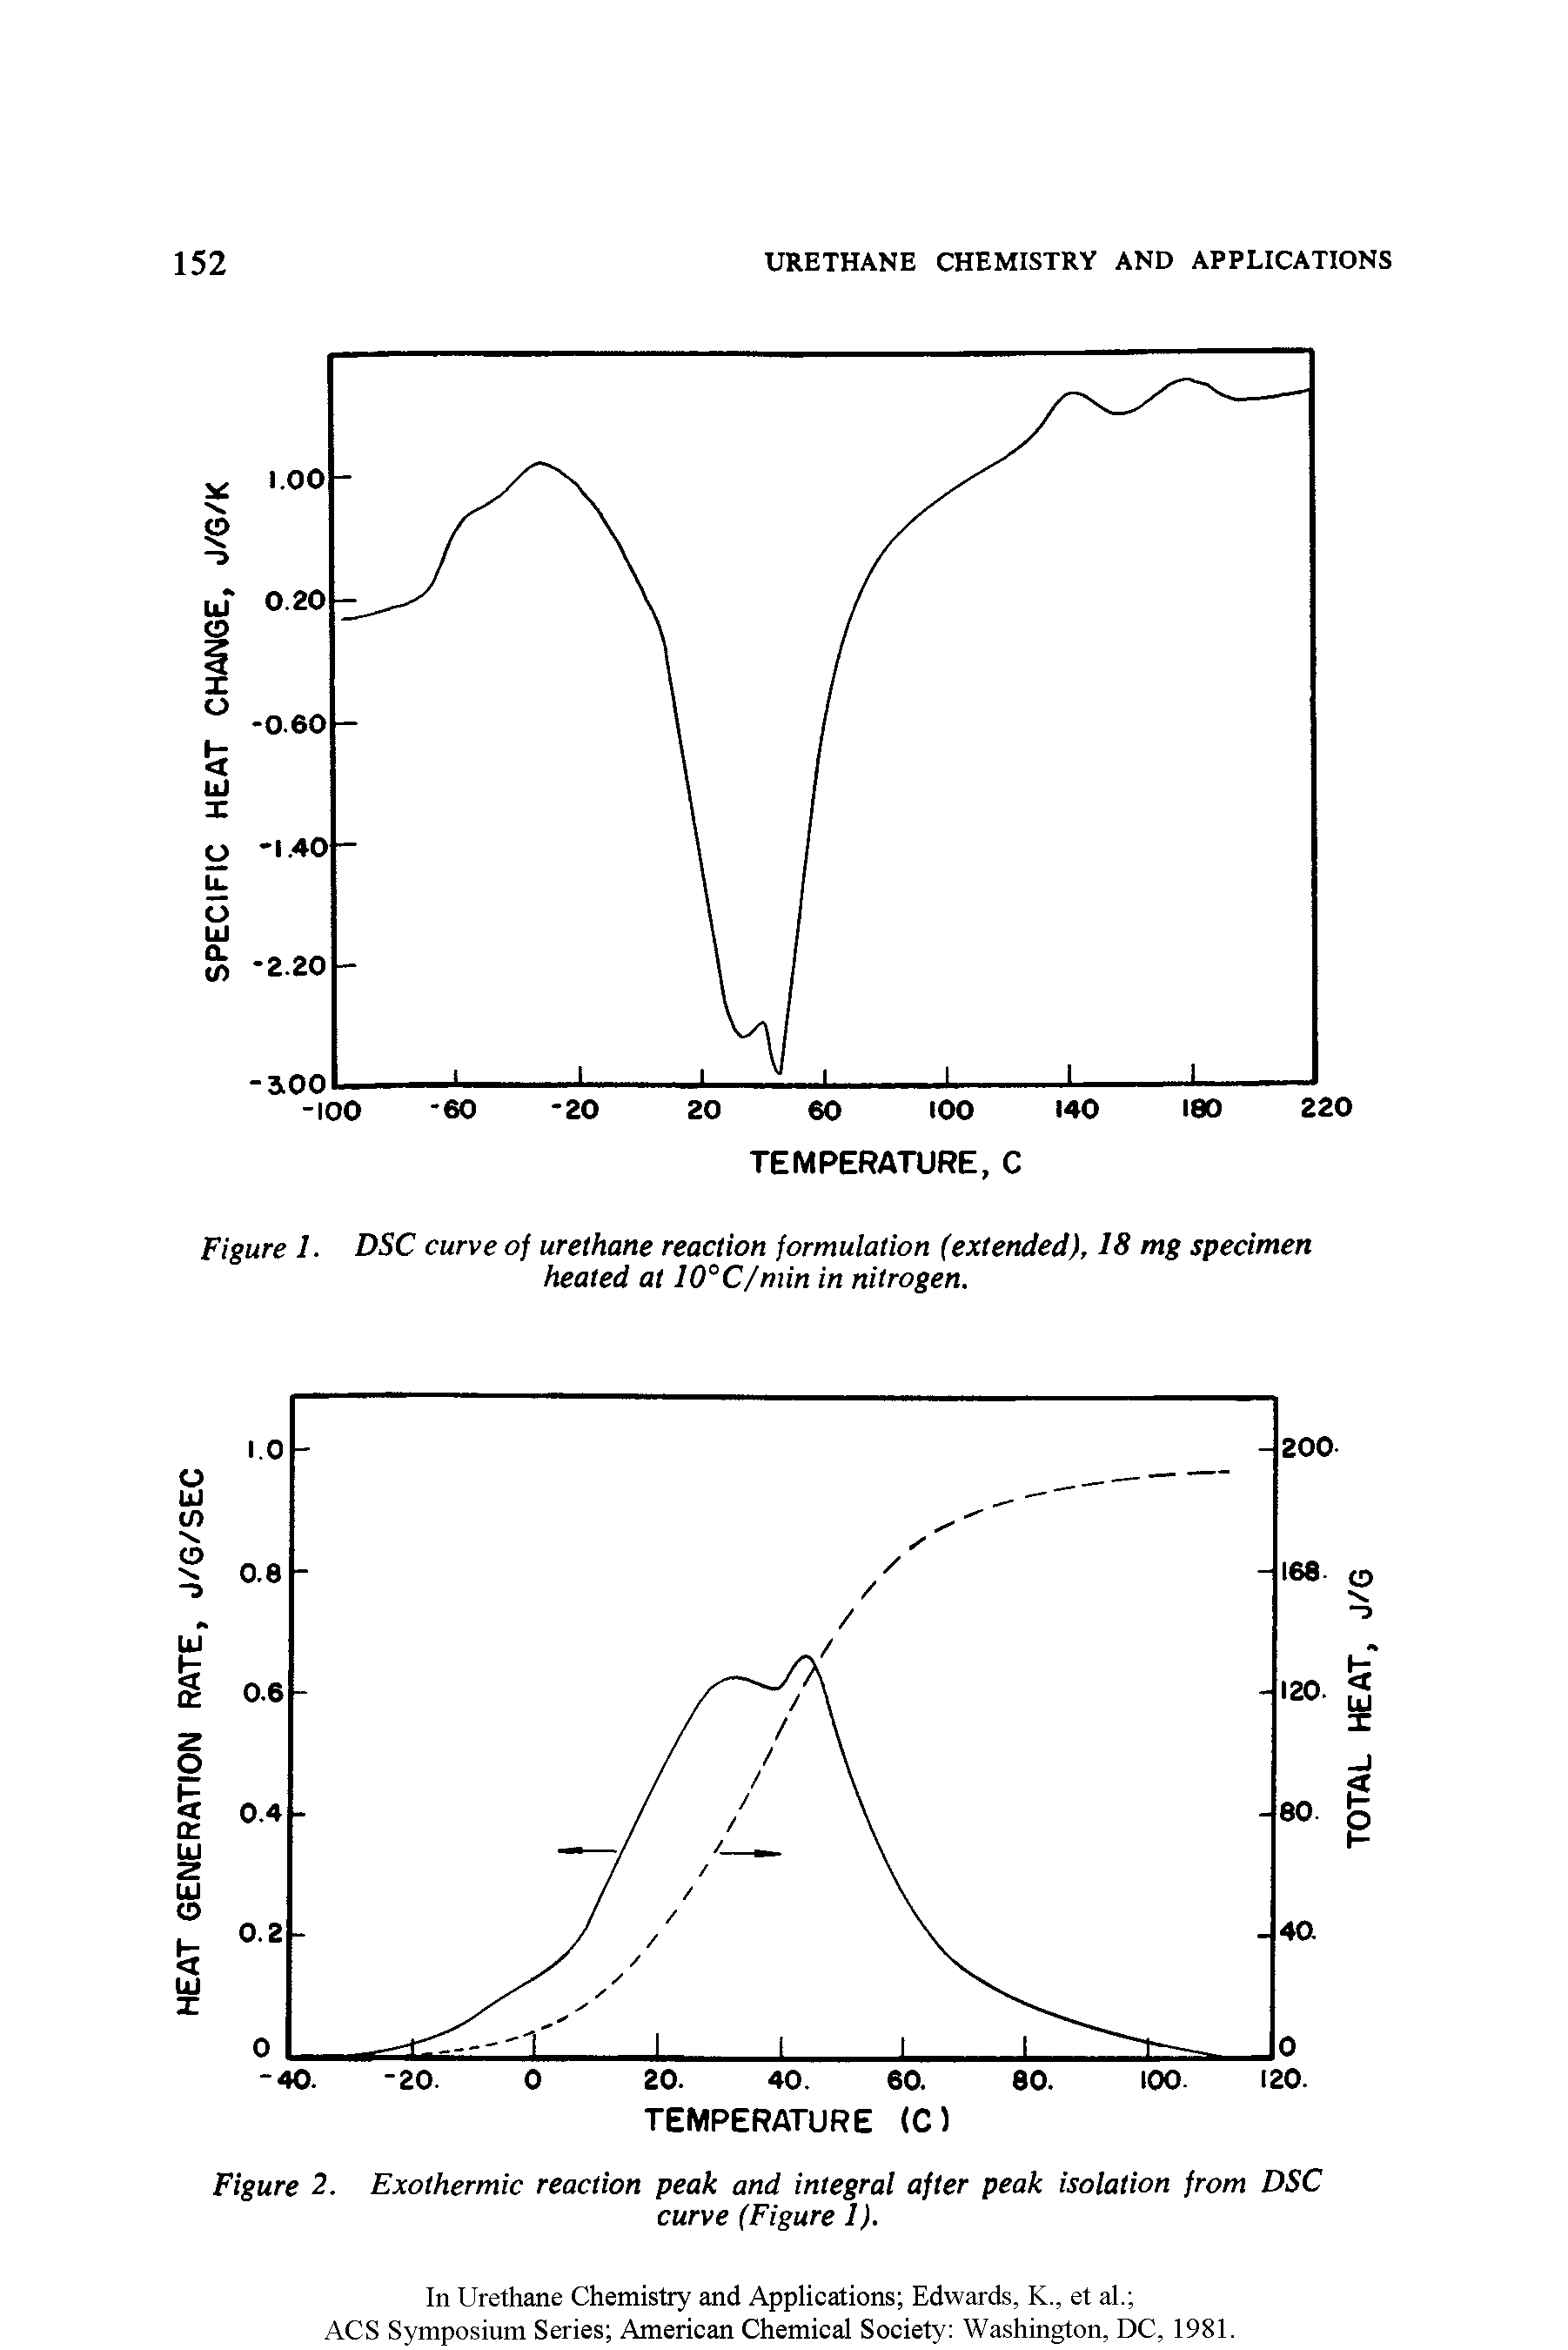 Figure 1. DSC curve of urethane reaction formulation (extended), 18 mg specimen heated at 10°C/min in nitrogen.